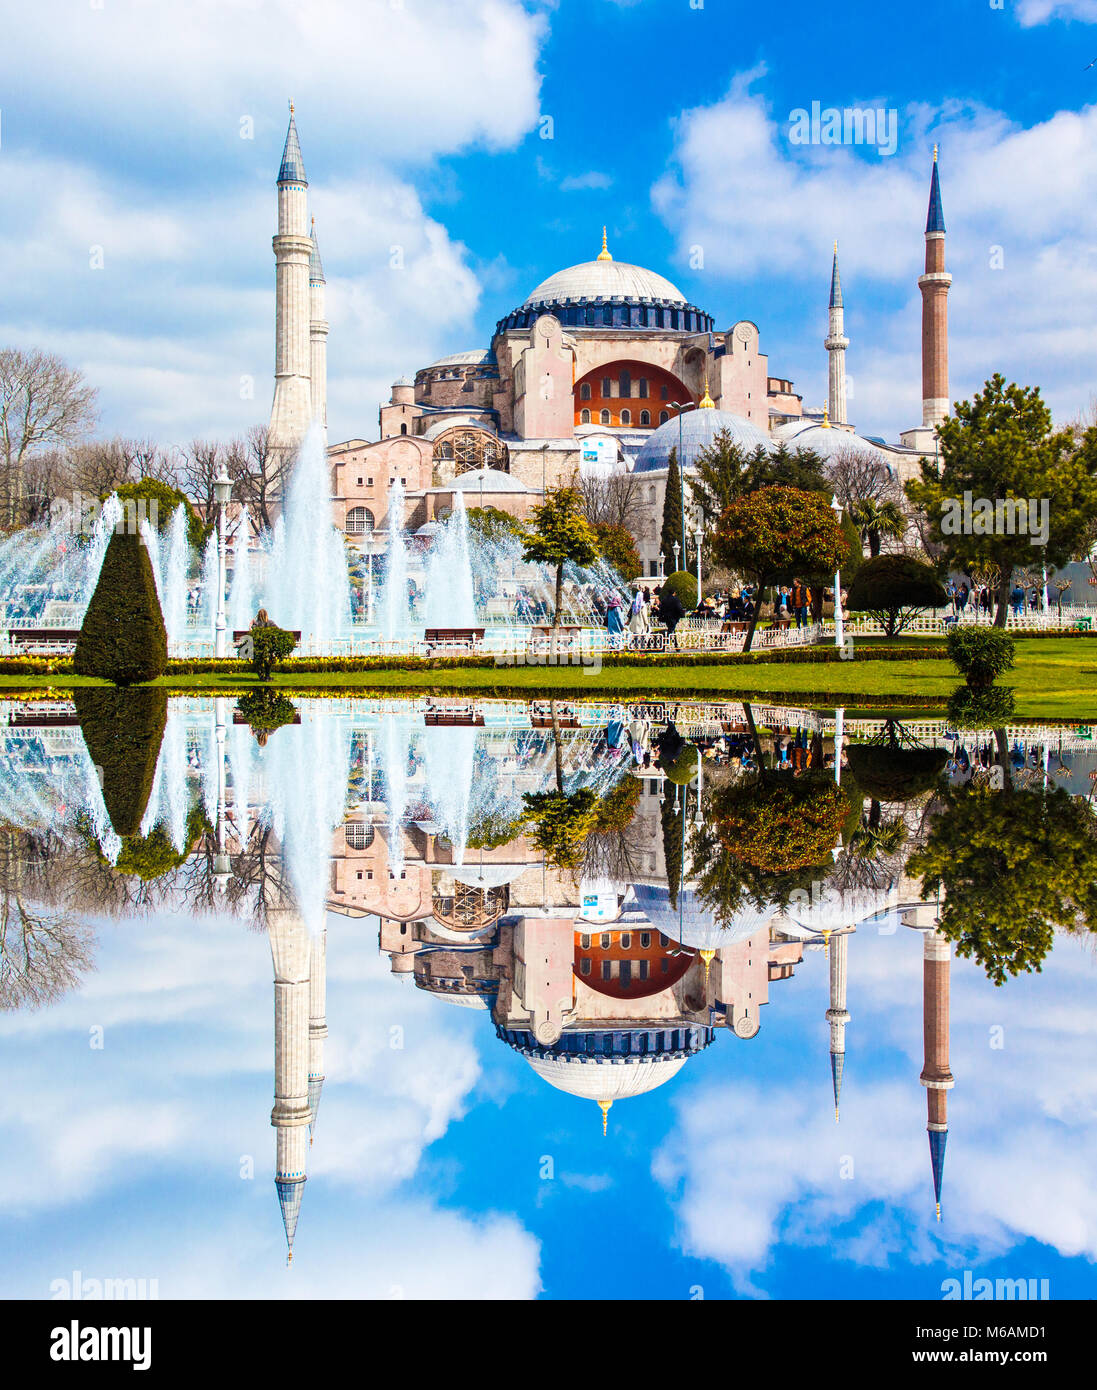 Panoramablick auf die Hagia Sophia im Sommer - Istanbul Türkei. Künstlerische Interpretation, Spiegeleffekt. Stockfoto